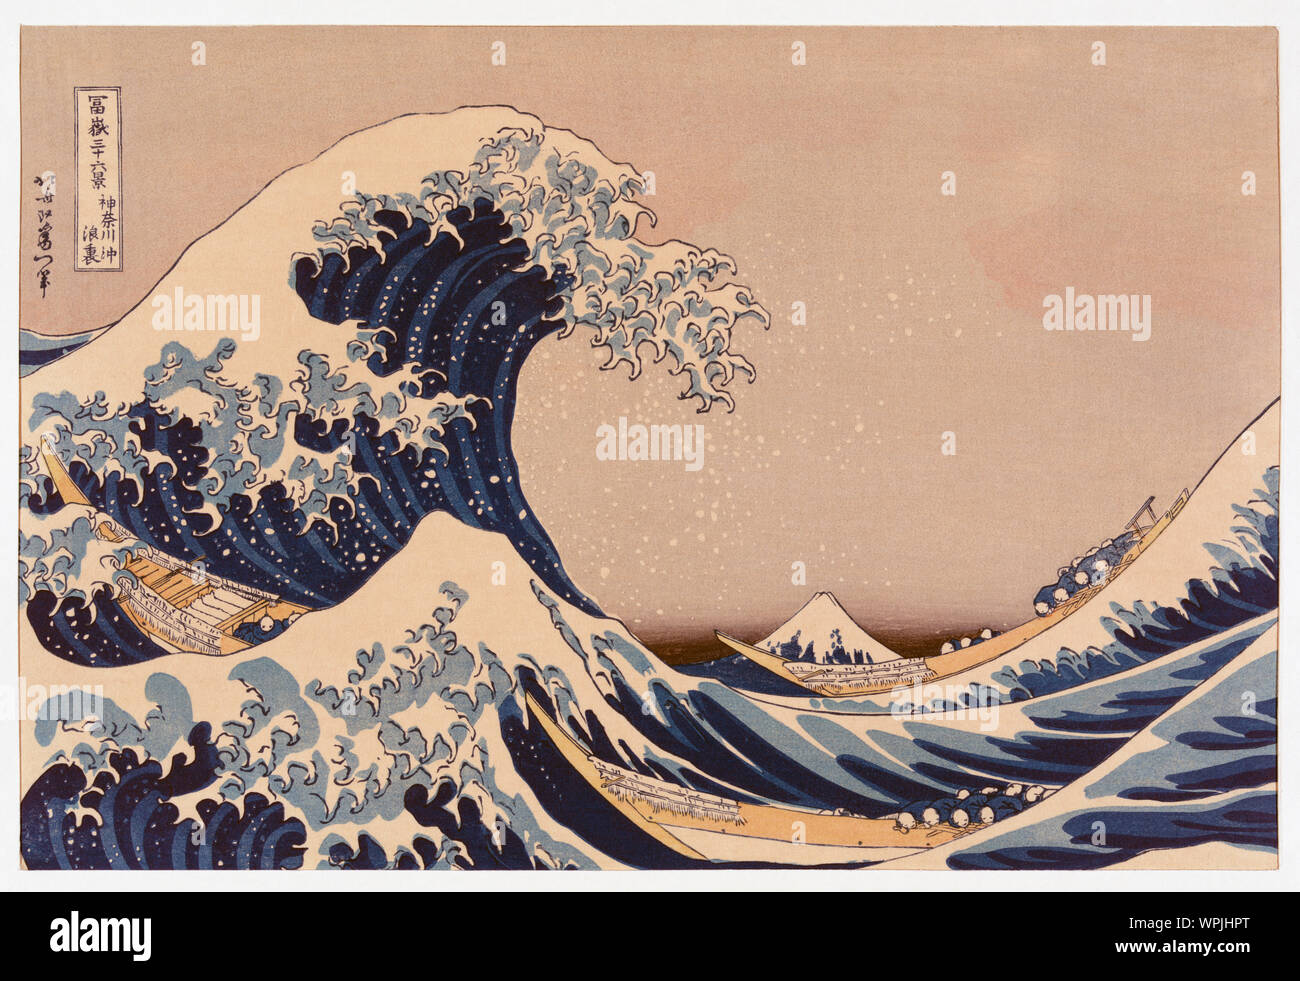 La grande vague de Kanagawa aussi connu comme la grande vague ou simplement la vague, après une gravure sur bois par l'artiste japonais ukiyo-e Katsushika Hokusai, 1760 - 1849. La grande vague de Kanagawa est devenu le plus connu d'une série d'impression connu comme trente-six Vue du Mont Fuji par Hokusai créé au début des années 1830. Banque D'Images